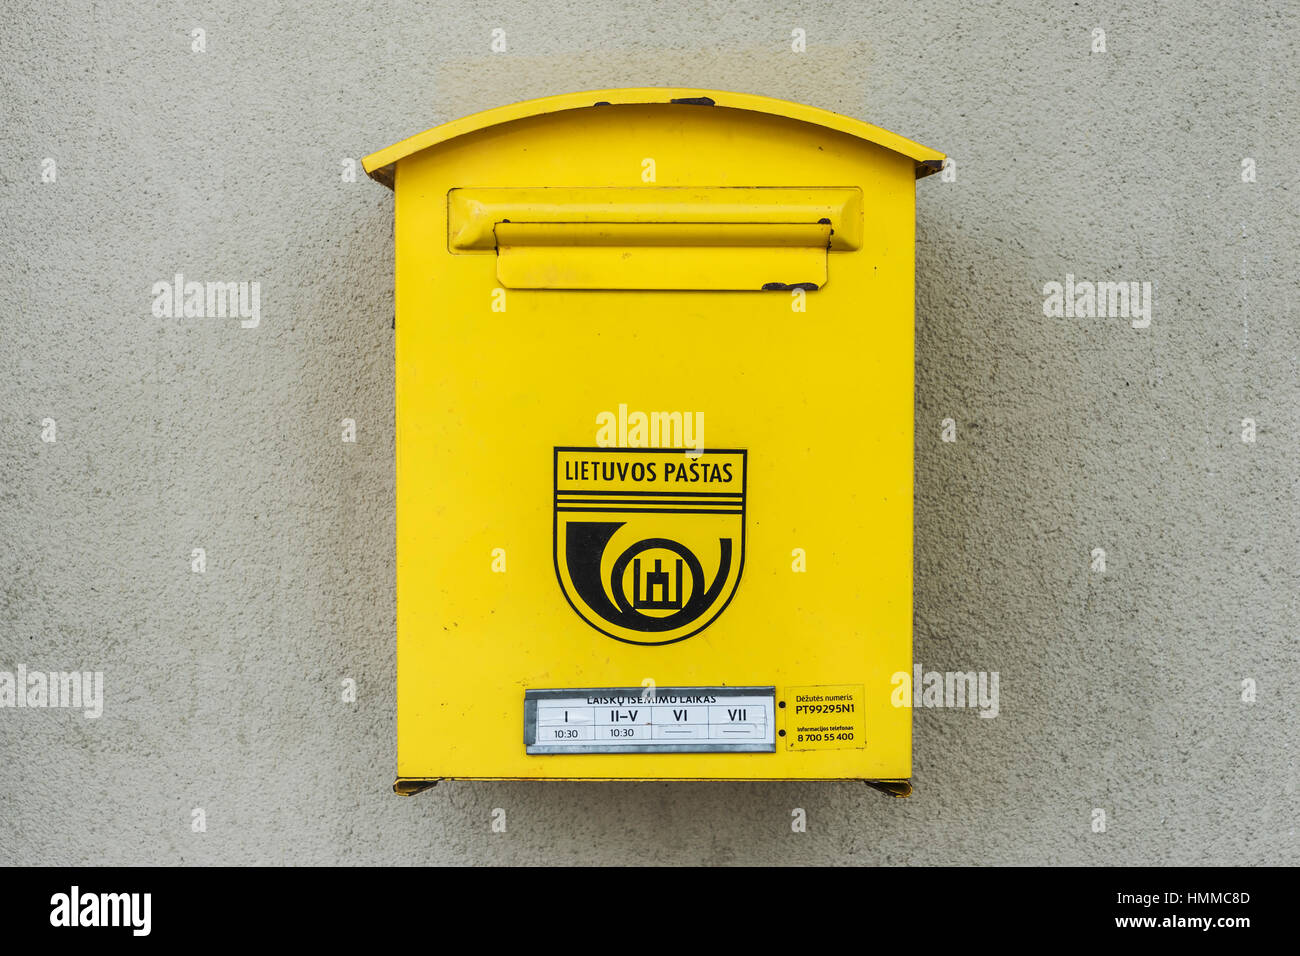 Detailansicht eines litauischen Briefkastens, Litauen, Baltikum, Europa | Dettaglio foto di una cassetta postale lituano, Lituania, paesi baltici, Europa Foto Stock